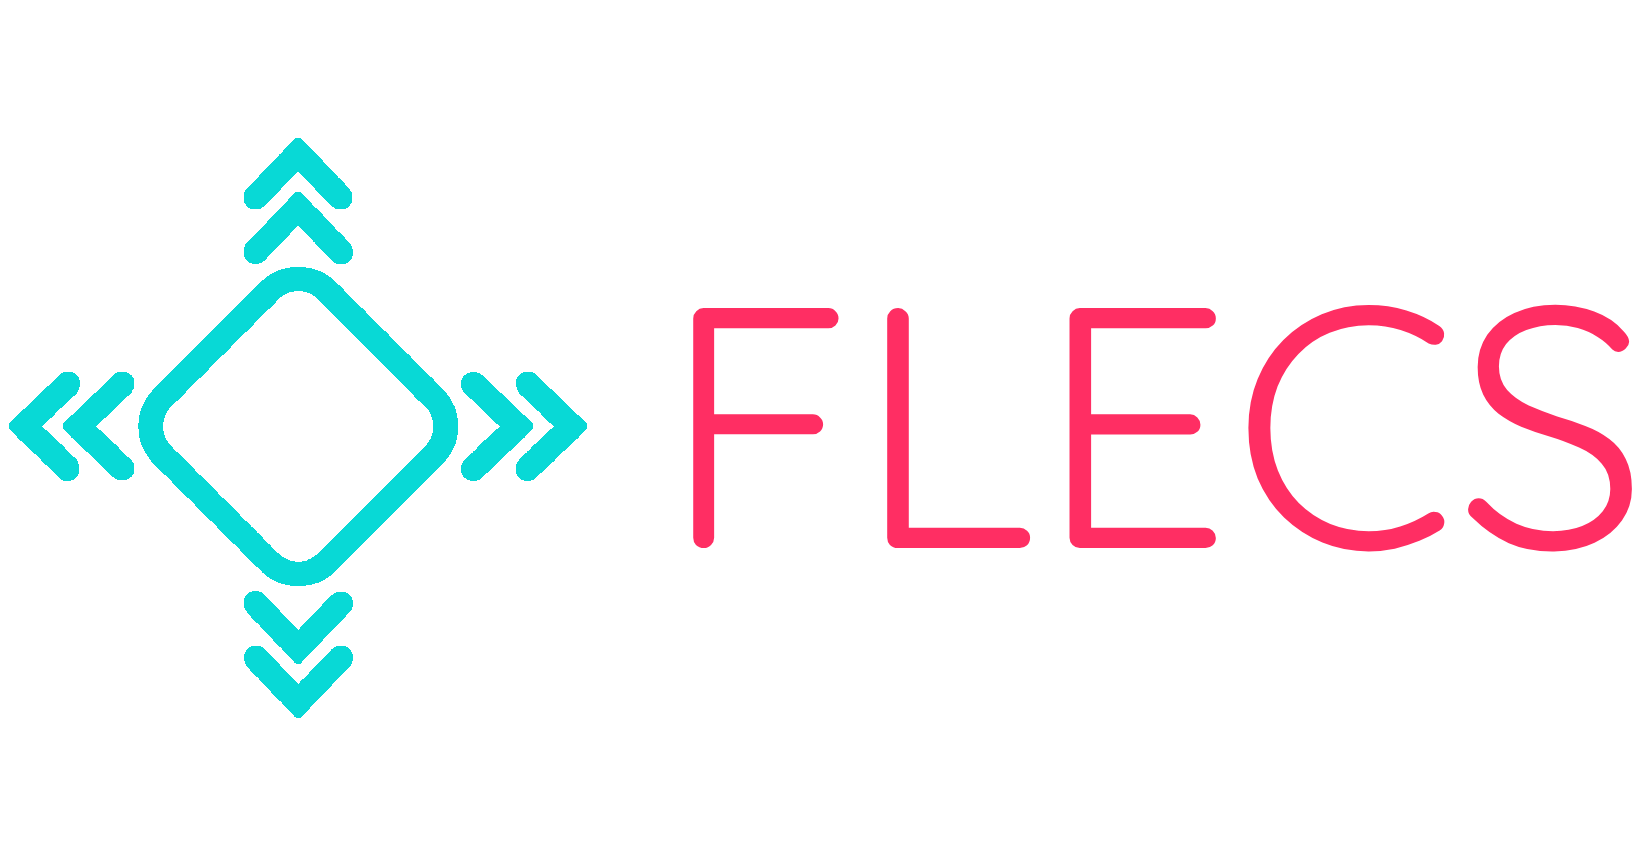 FLECS Archives - FLECS